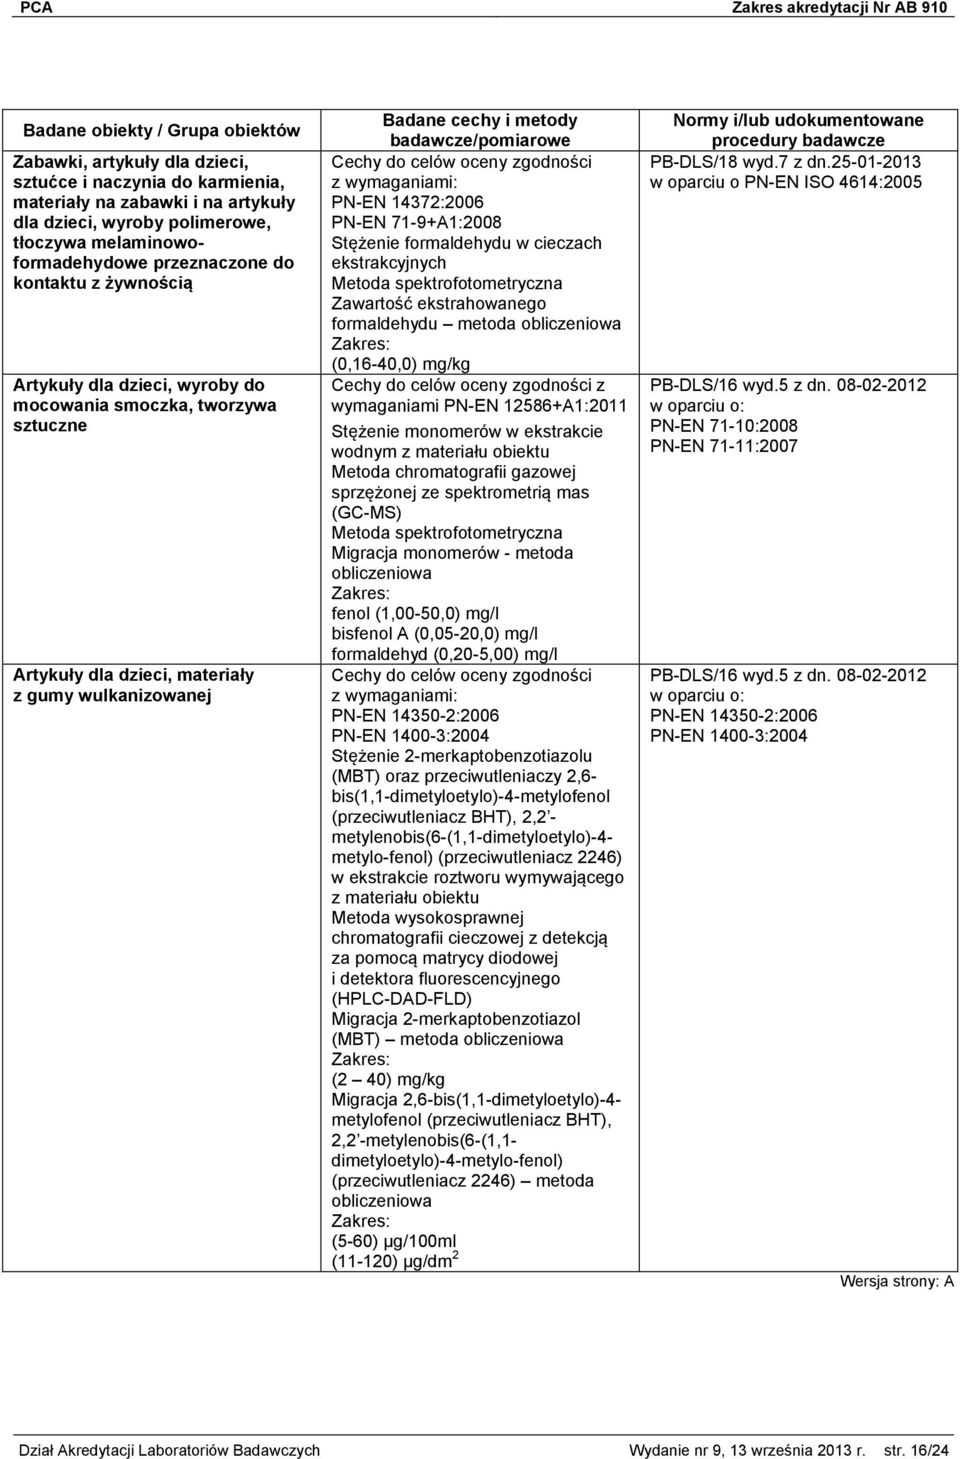 71-9+A1:2008 Stężenie formaldehydu w cieczach ekstrakcyjnych Metoda spektrofotometryczna Zawartość ekstrahowanego formaldehydu metoda (0,16-40,0) mg/kg wymaganiami PN-EN 12586+A1:2011 Stężenie